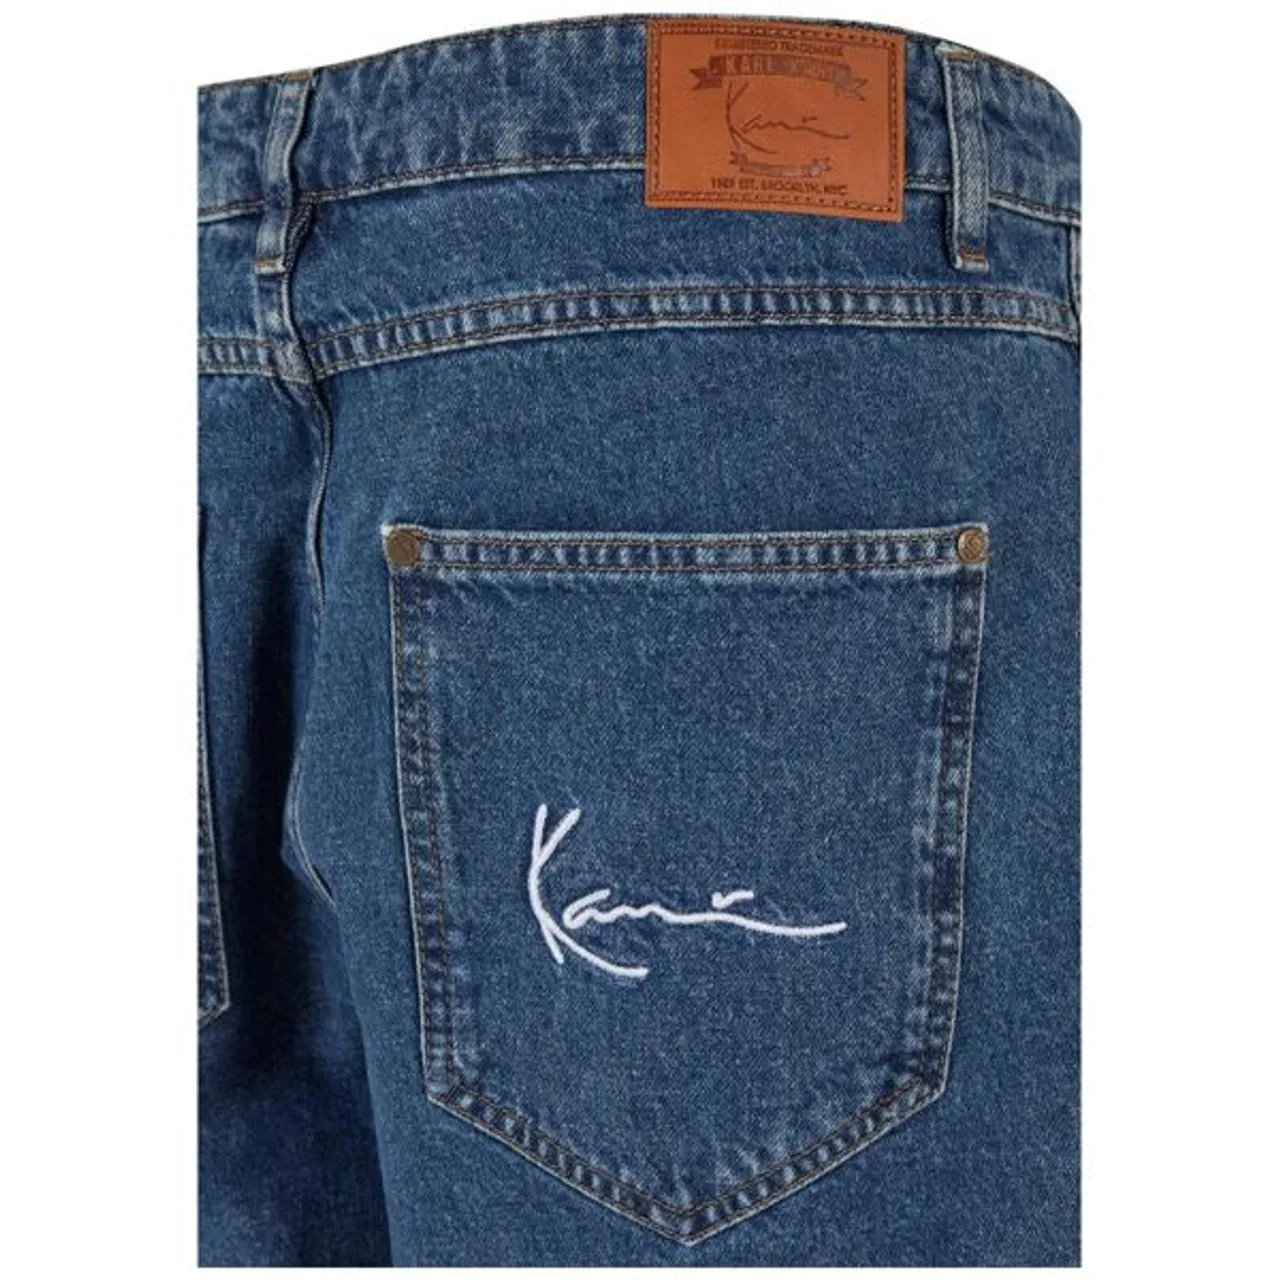 Bequeme Jeans KARL KANI "Karl Kani Herren" Gr. 30, Normalgrößen, blau (dark indigo) Herren Jeans